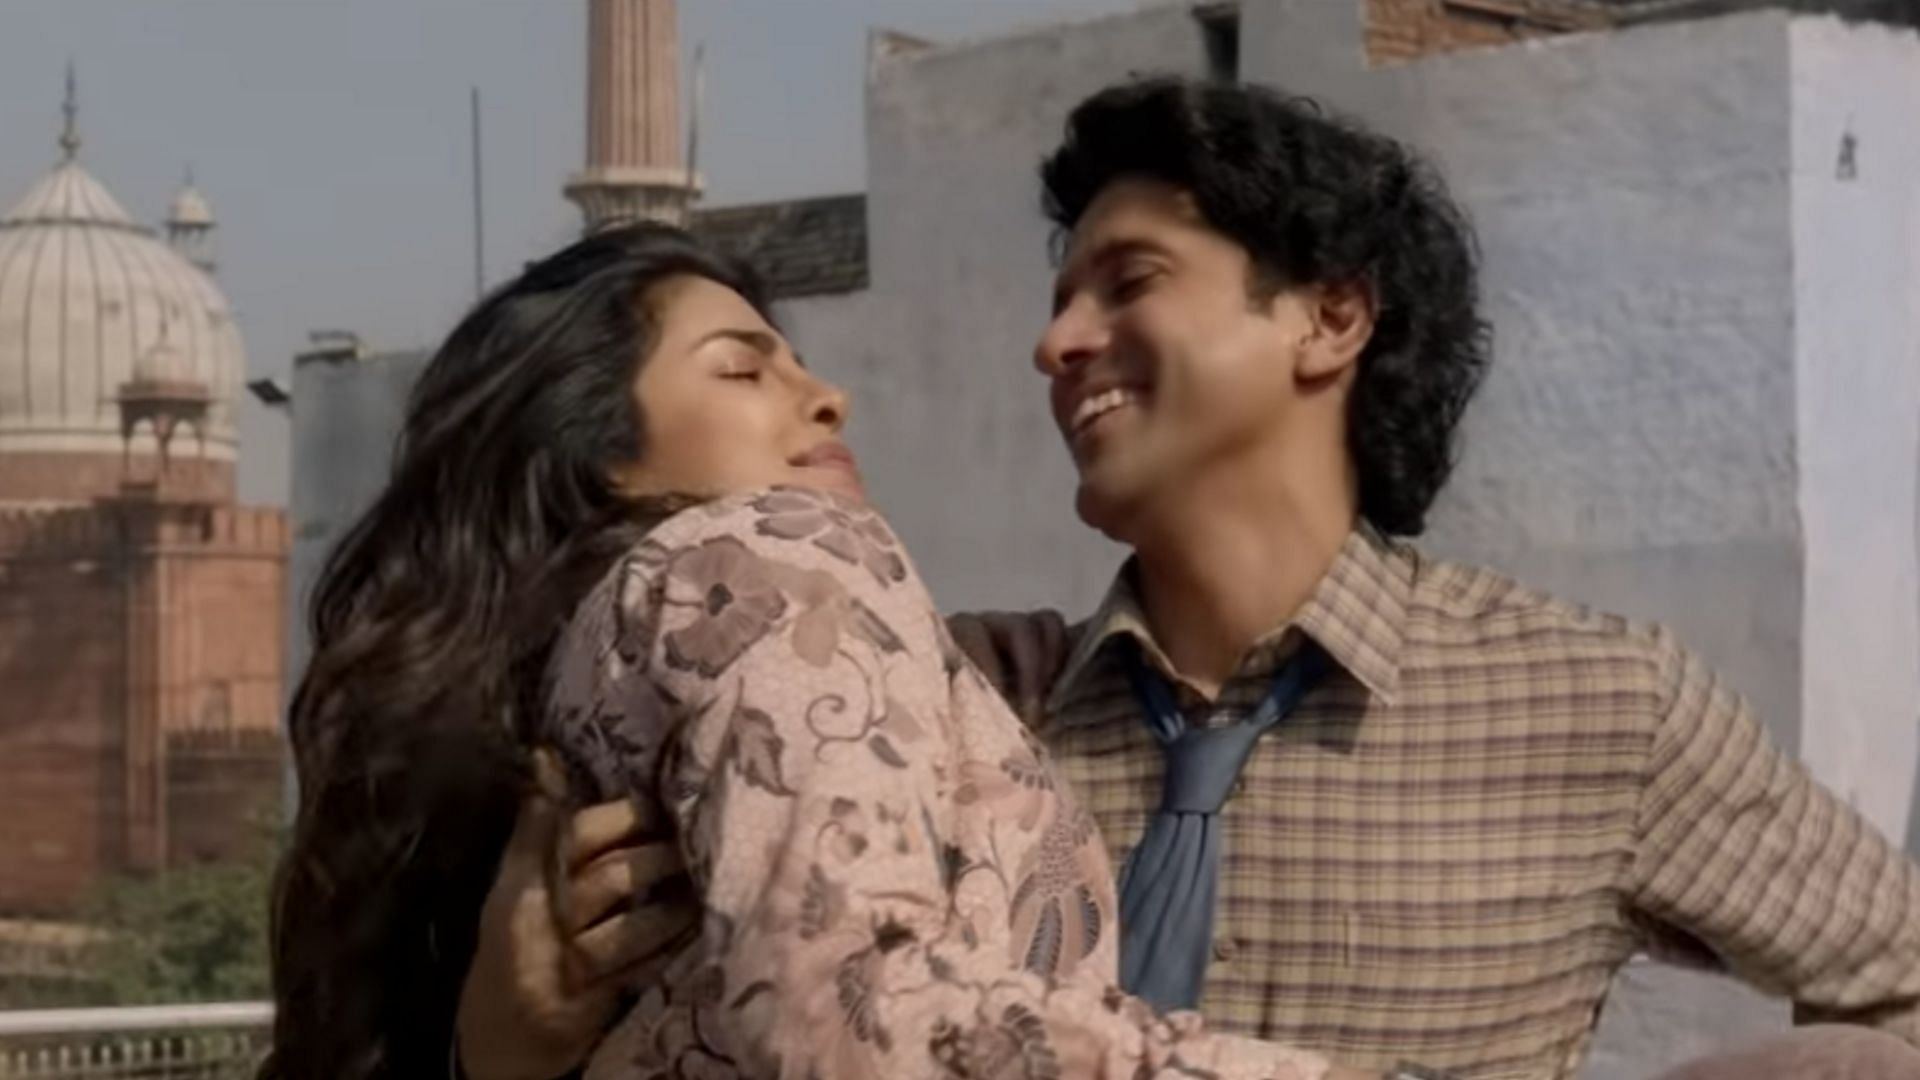  Priyanka Chopra and Farhan Akhtar in ‘Dil Hi Toh Hai’ from <i>The Sky Is Pink.</i>